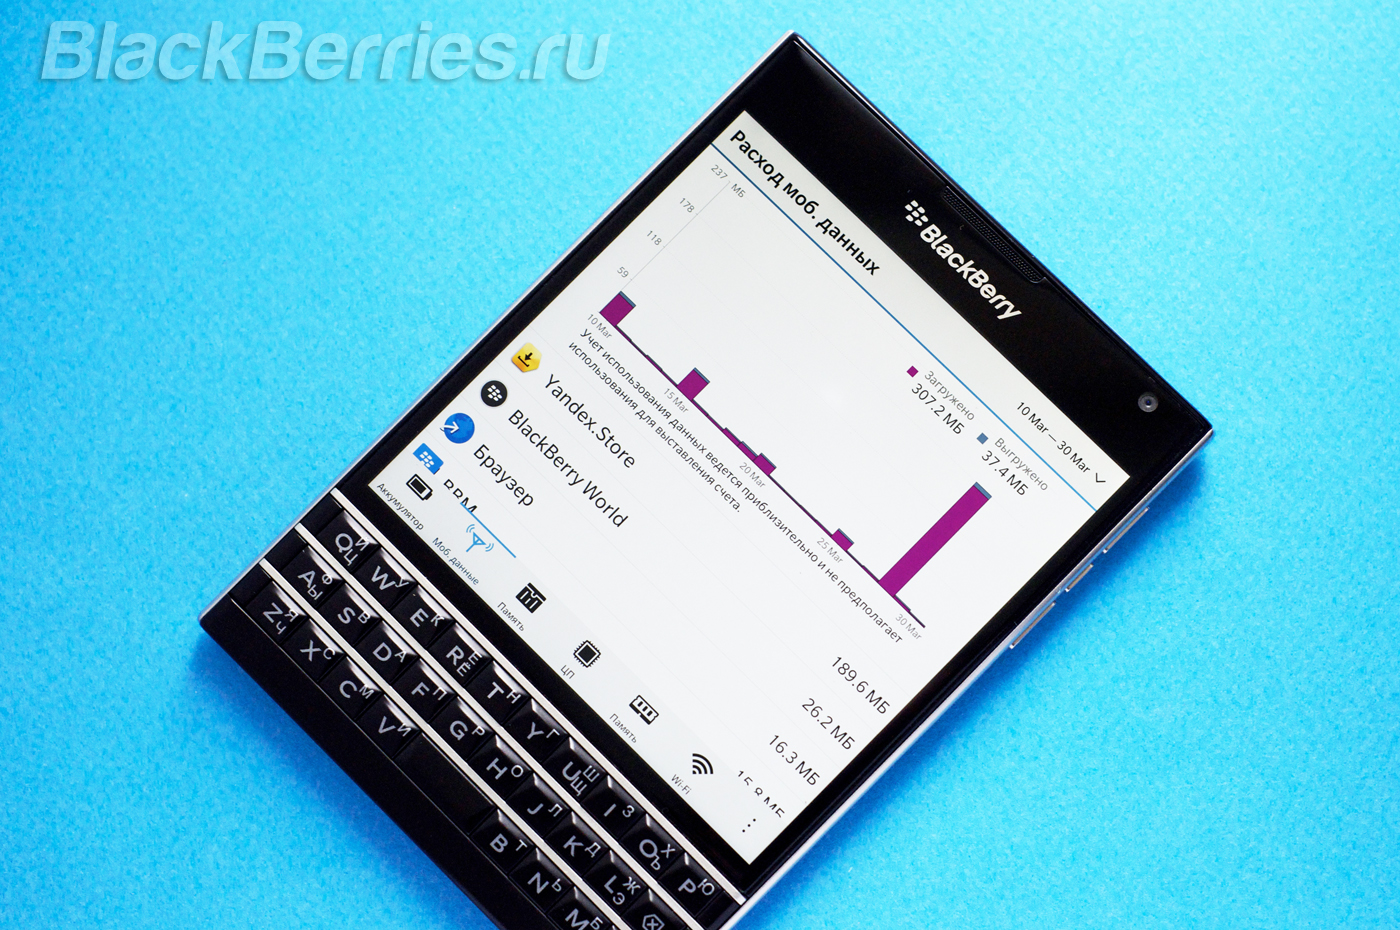 BlackBerry-Passport-Mobile-Data